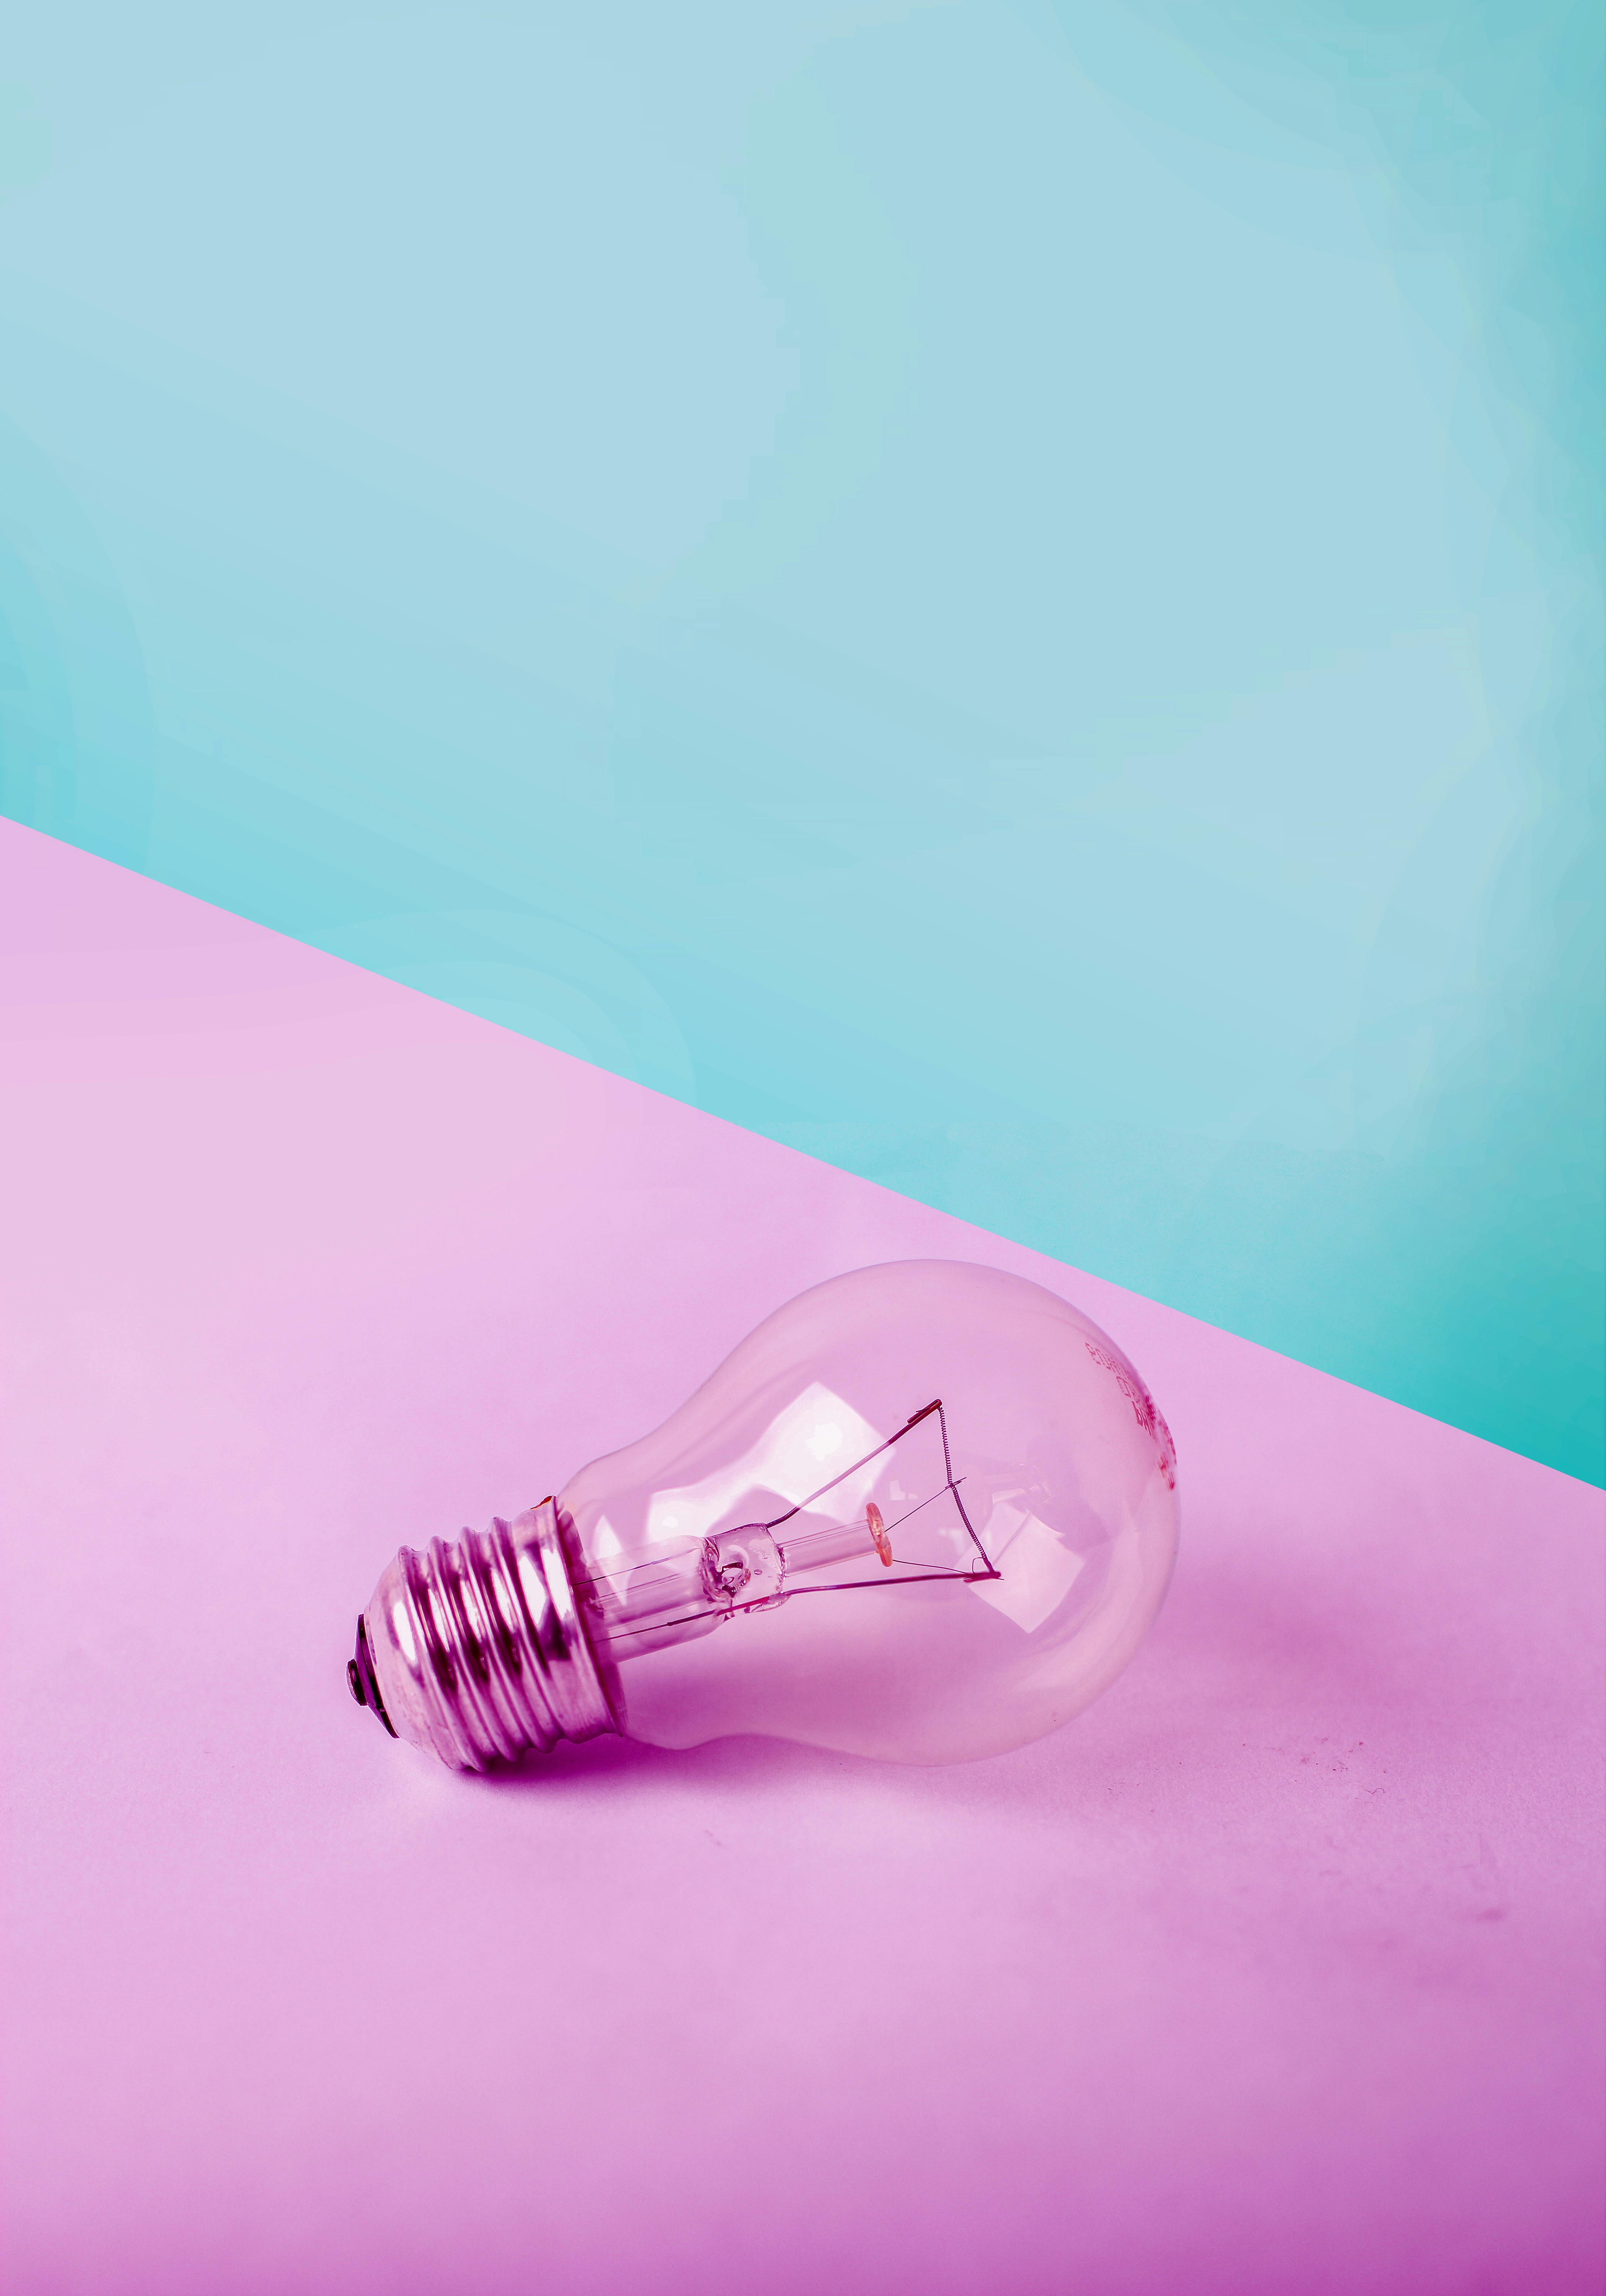 Die Glühbirne Idee Inspiration - Kostenloses Bild auf Pixabay